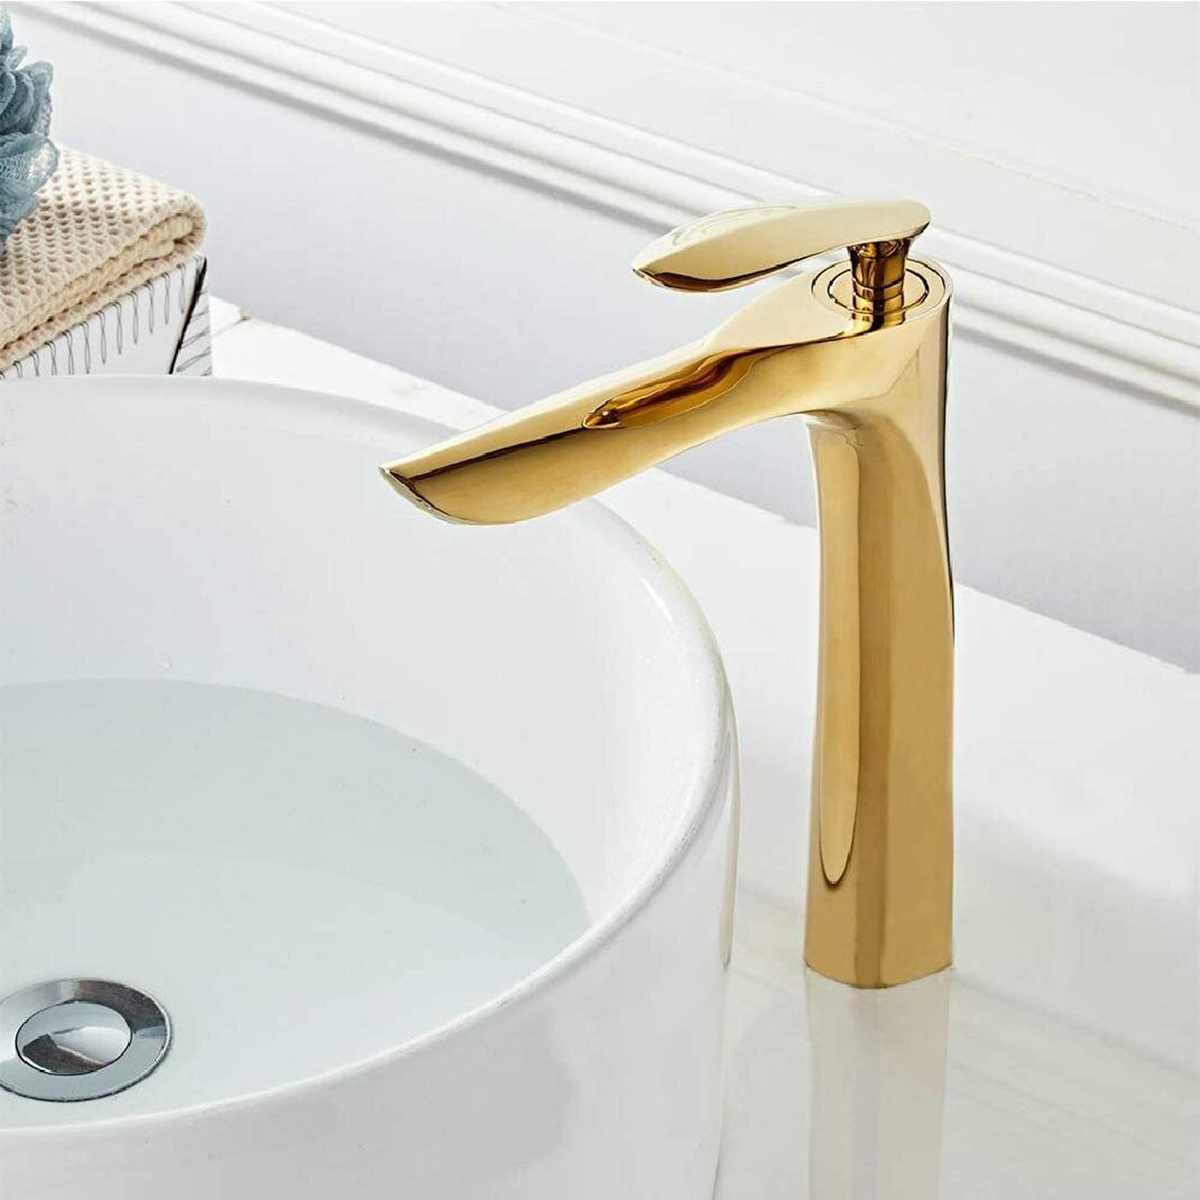 Groß- und Einzelhandel Luxus Elegent Golden Waschbecken Wasserhahn Einhebel-Wasserfall-Waschtisch-Mischbatterien